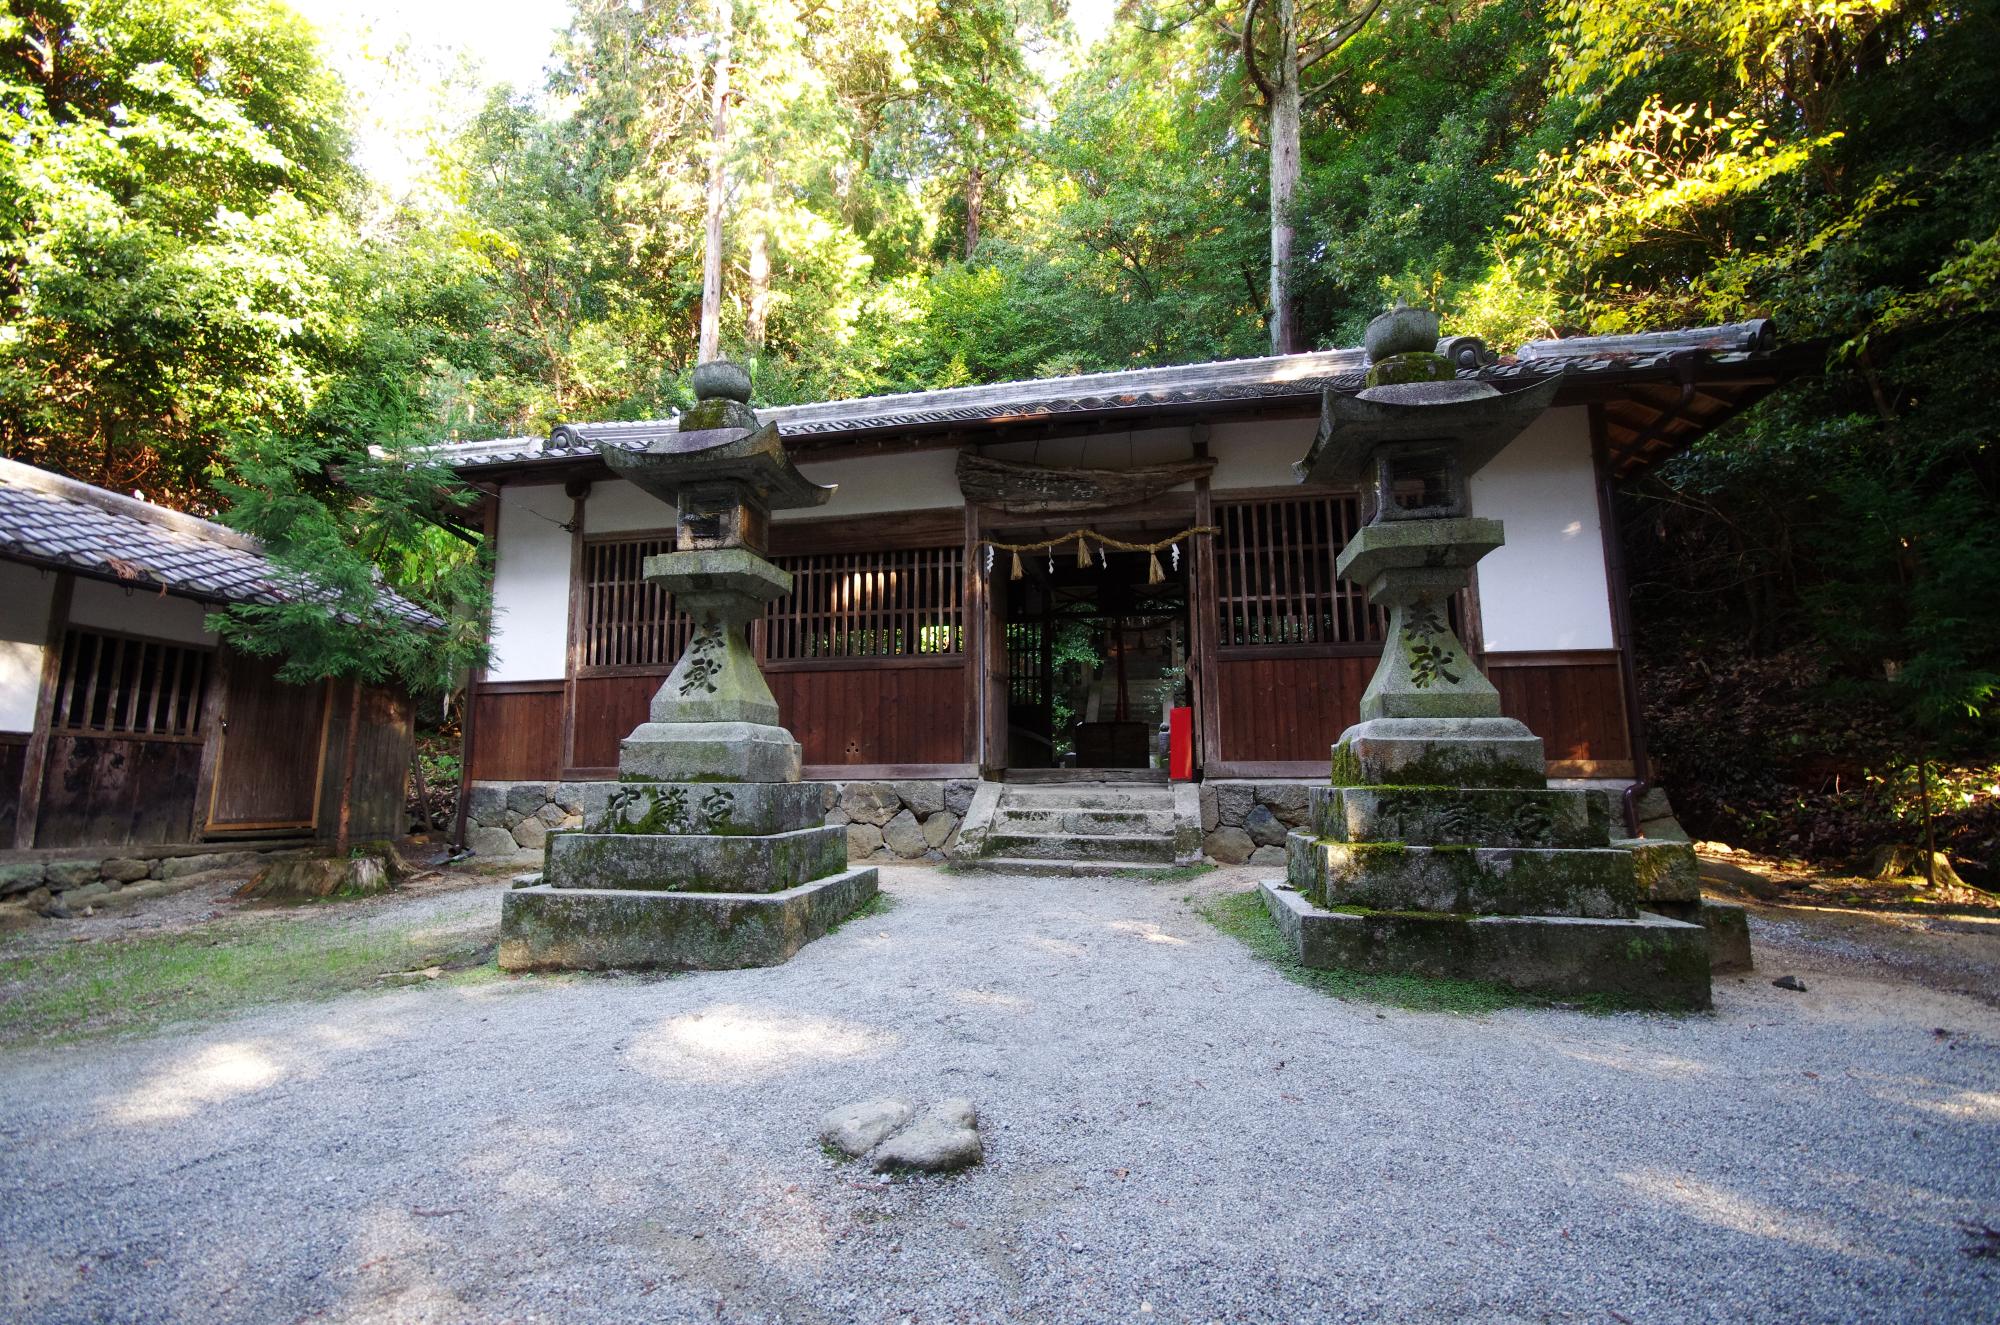 林の中に建っている小さな神社の前に、背の高い石の灯籠が2つ置かれている写真